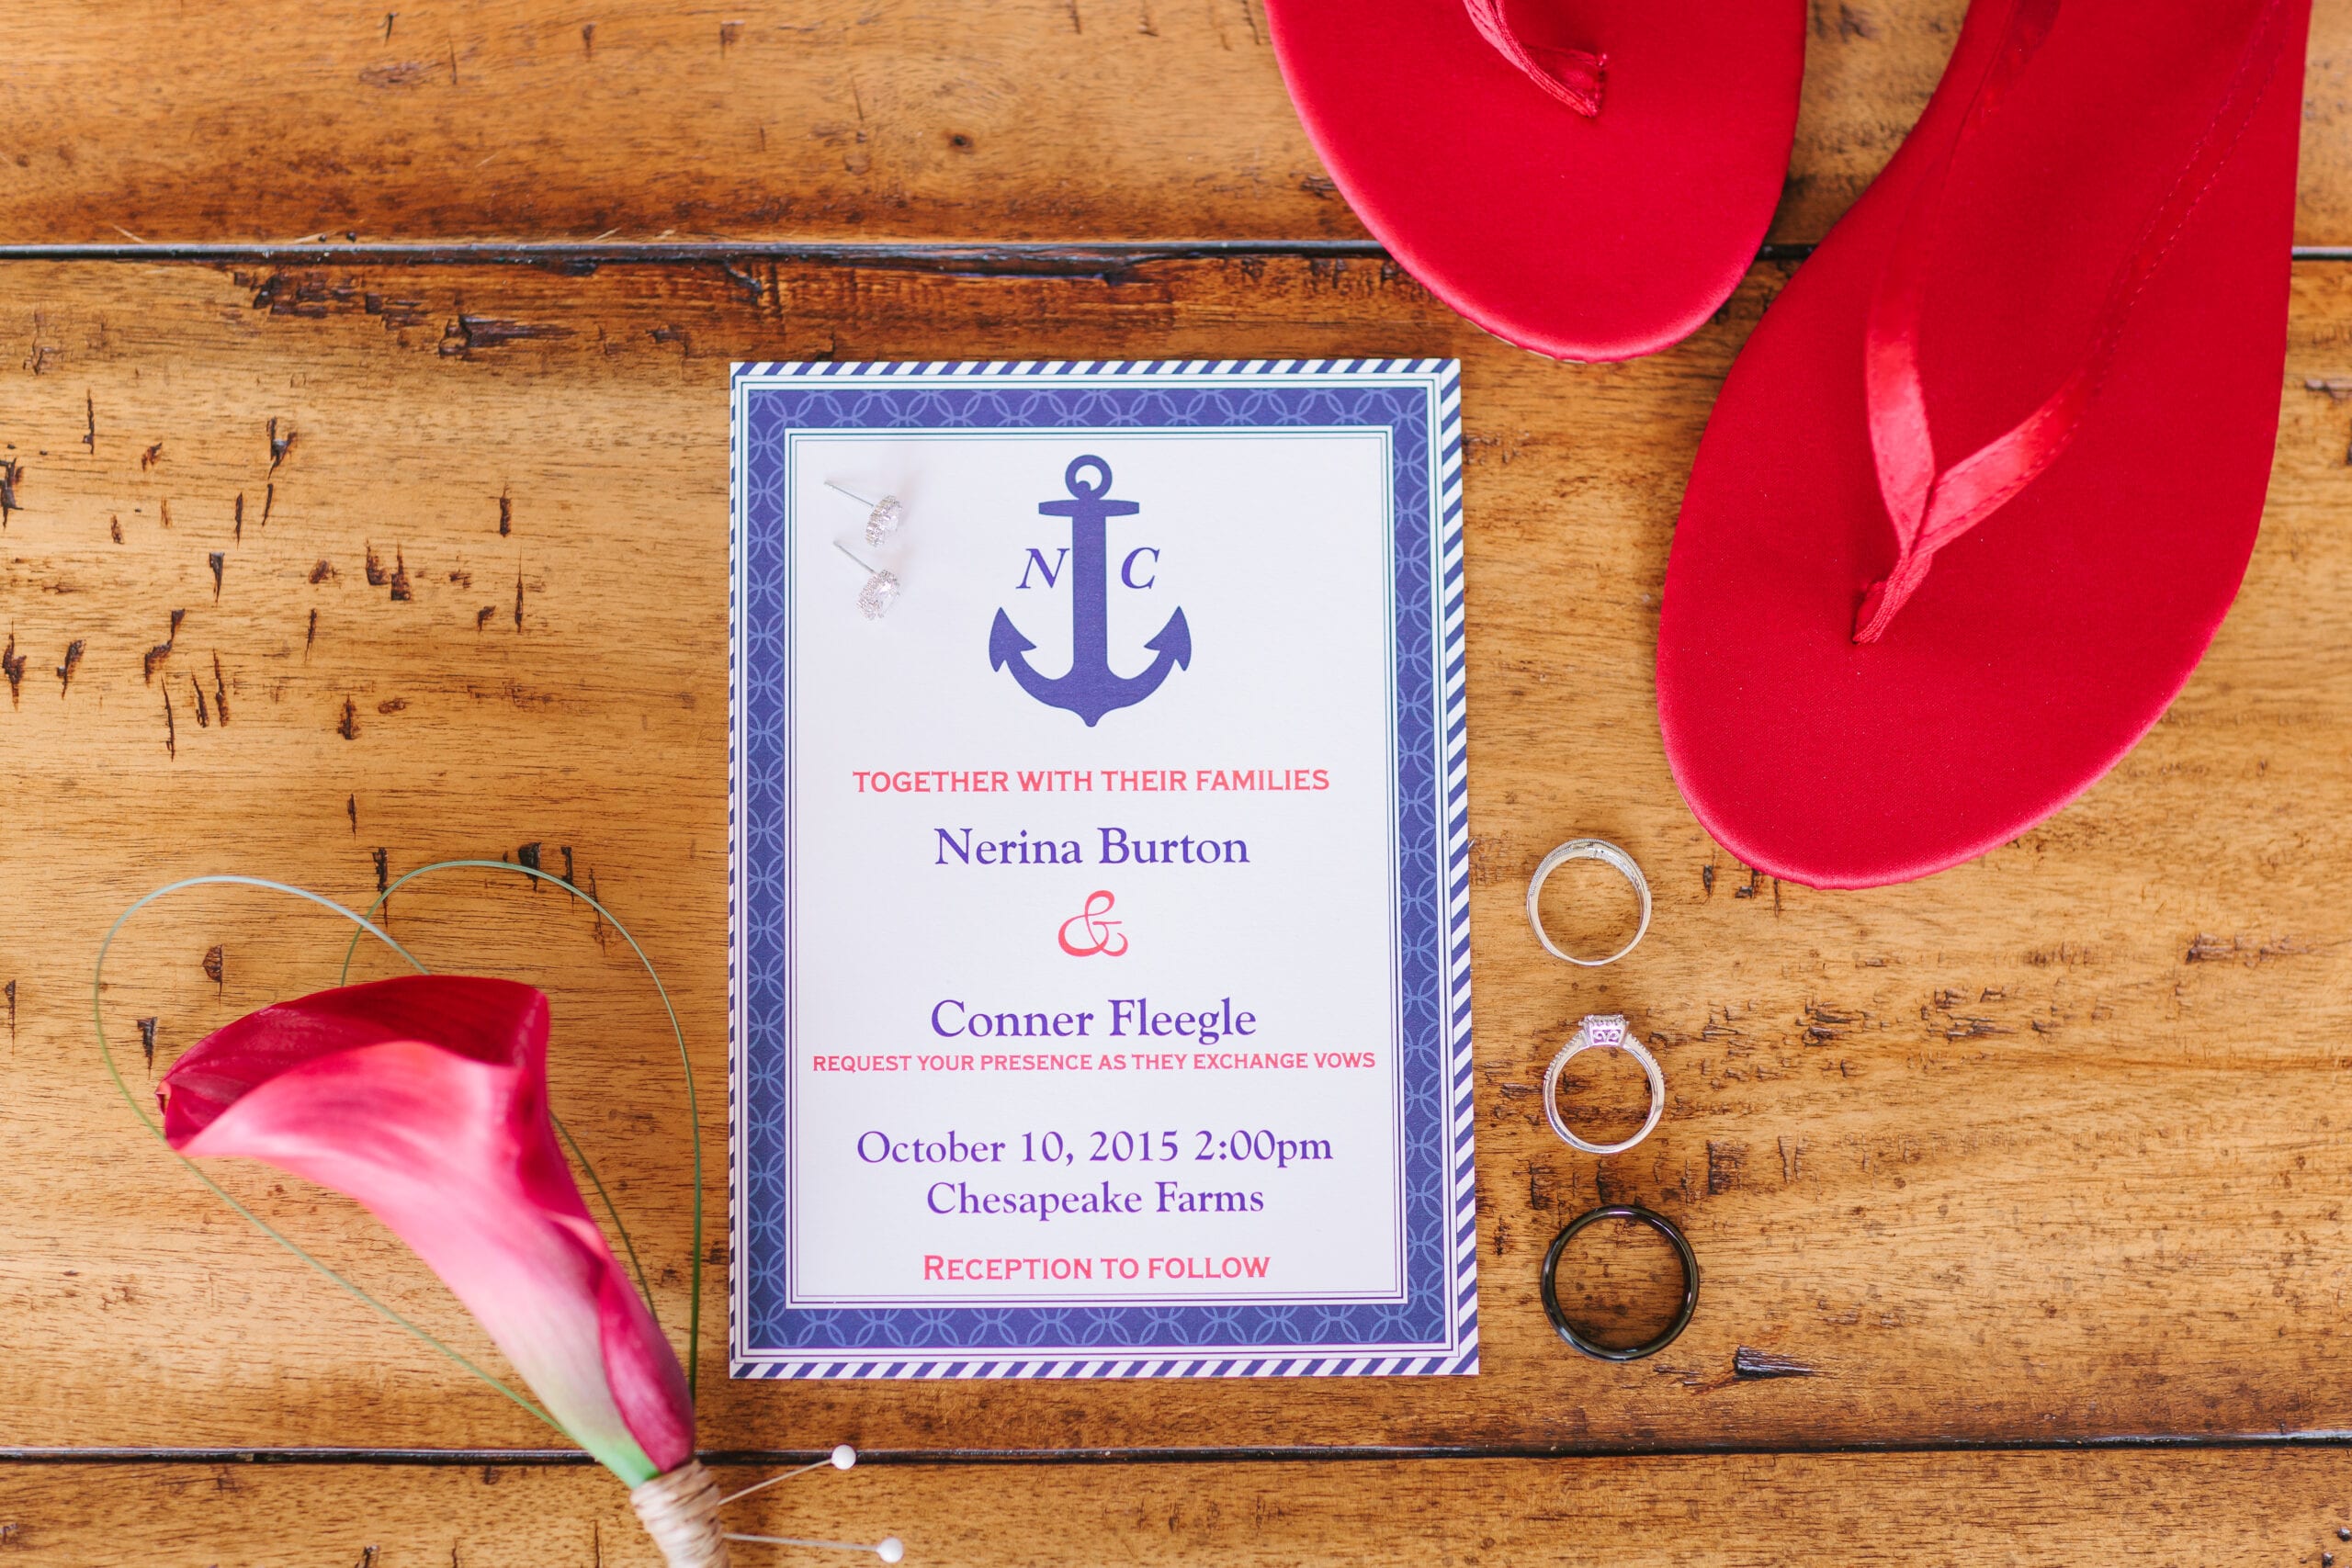 Chesapeake Maryland Nautical Wedding by Lauren Myers Photography #Nautical #ChesapeakeWedding #NavyWedding